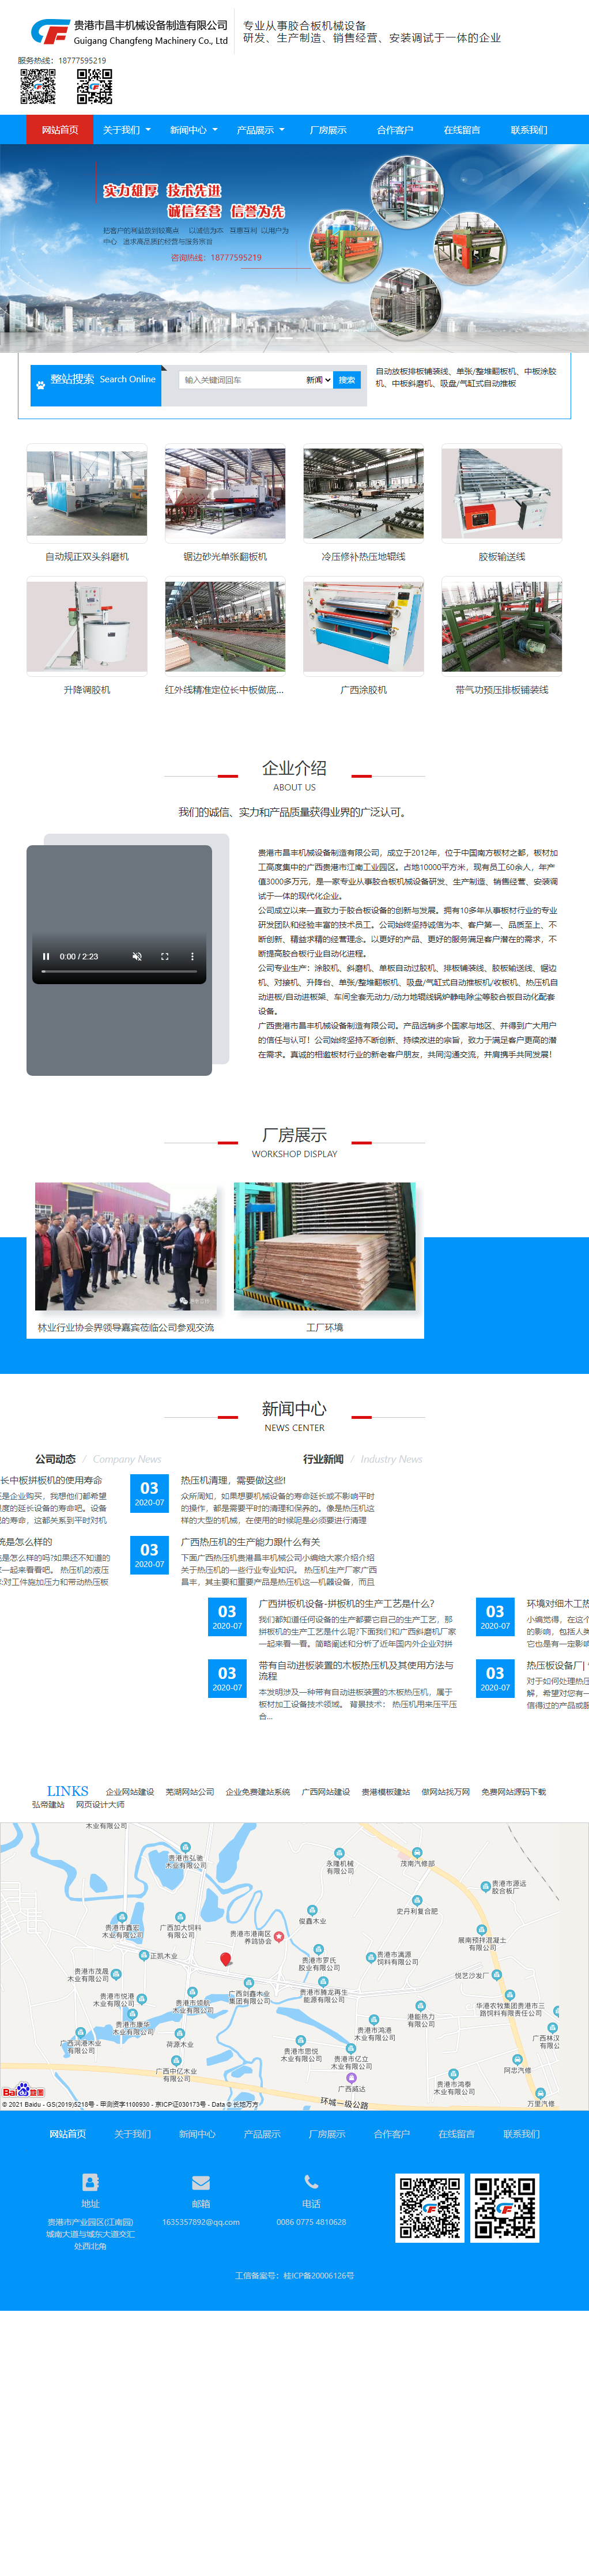 广西贵港市昌丰机械设备制造有限公司网站案例